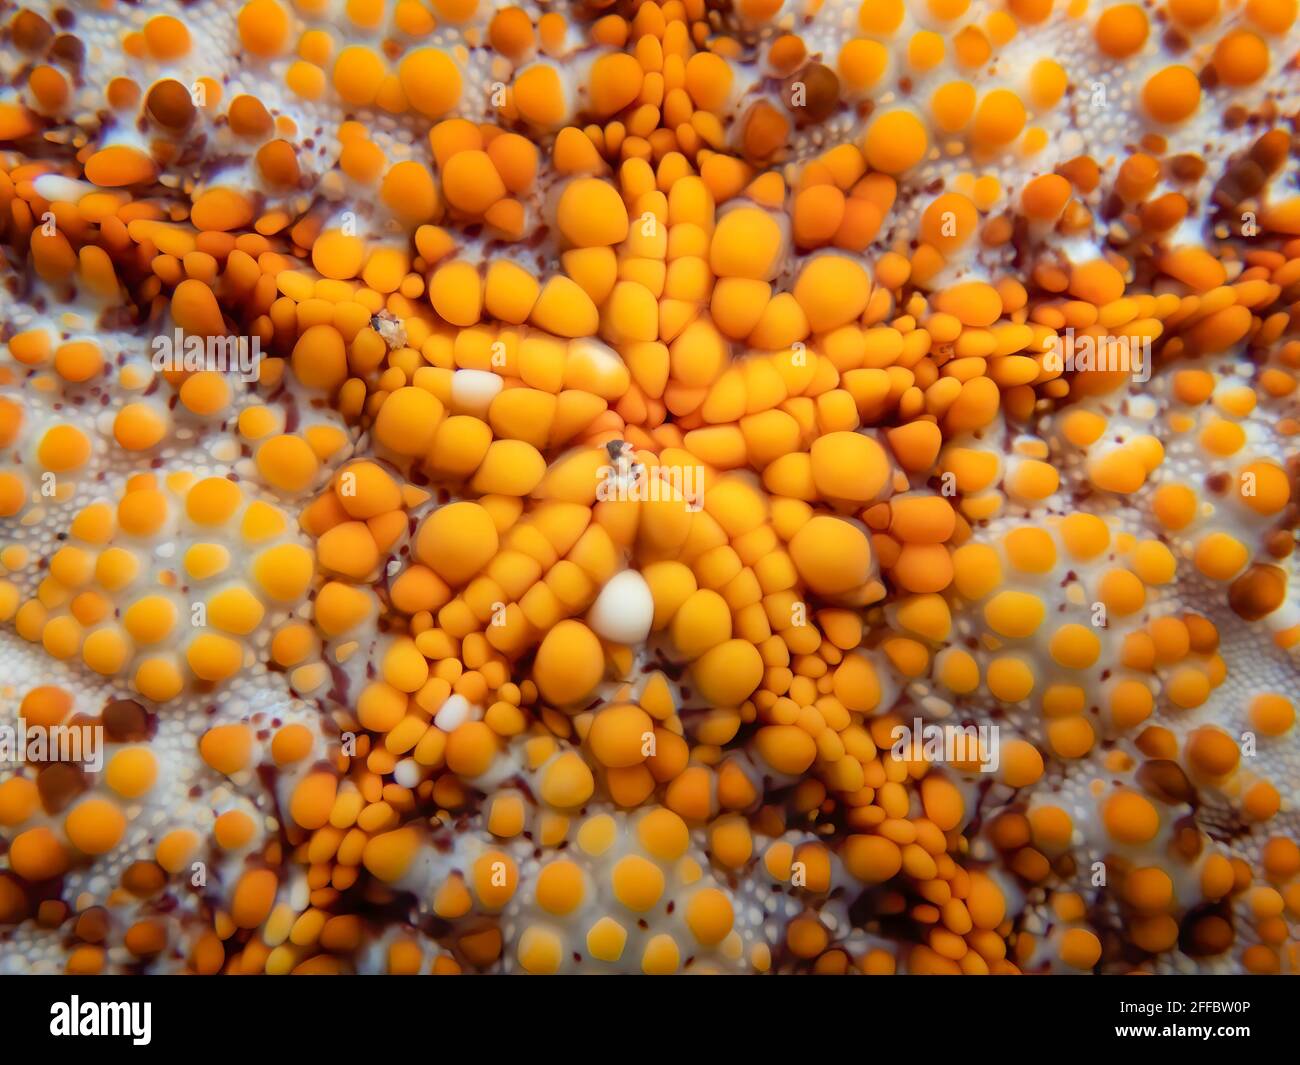 Diseño abstracto en primer plano de cojín de estrella de mar con brillantes protuberancias y formas de color naranja y blanco. Foto de stock